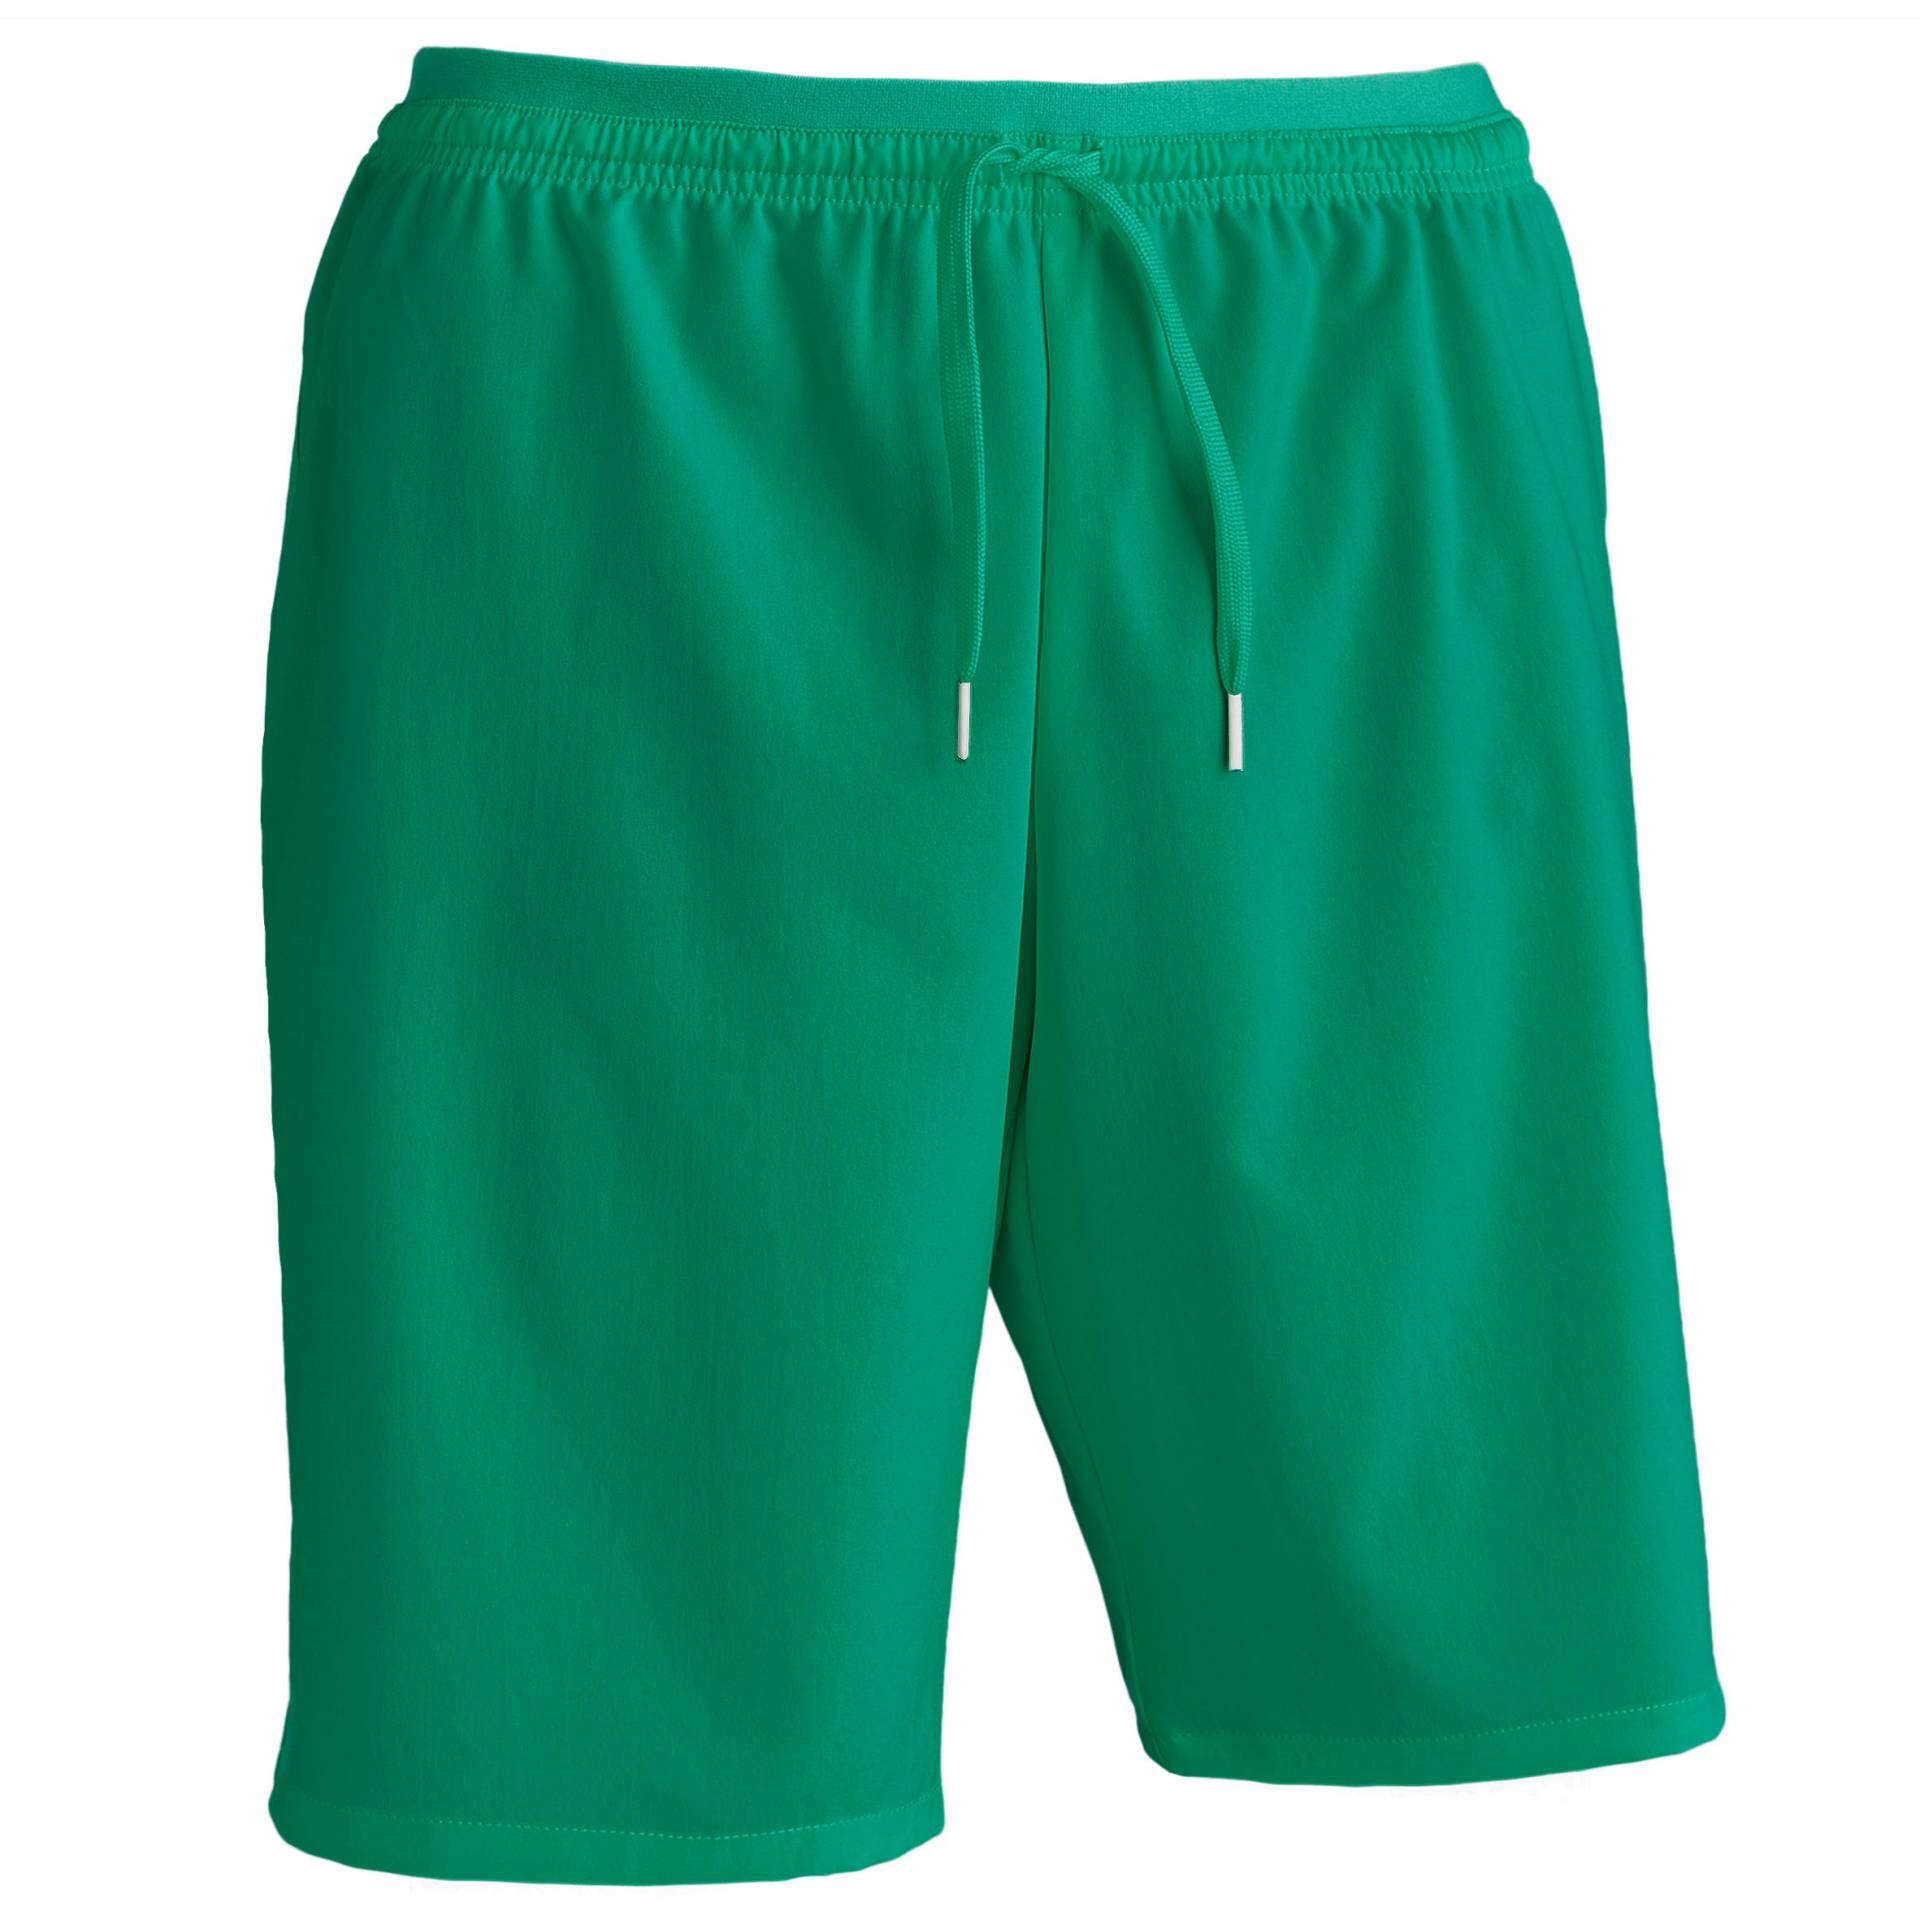 Damen/Herren Fussball Shorts Viralto grün von KIPSTA